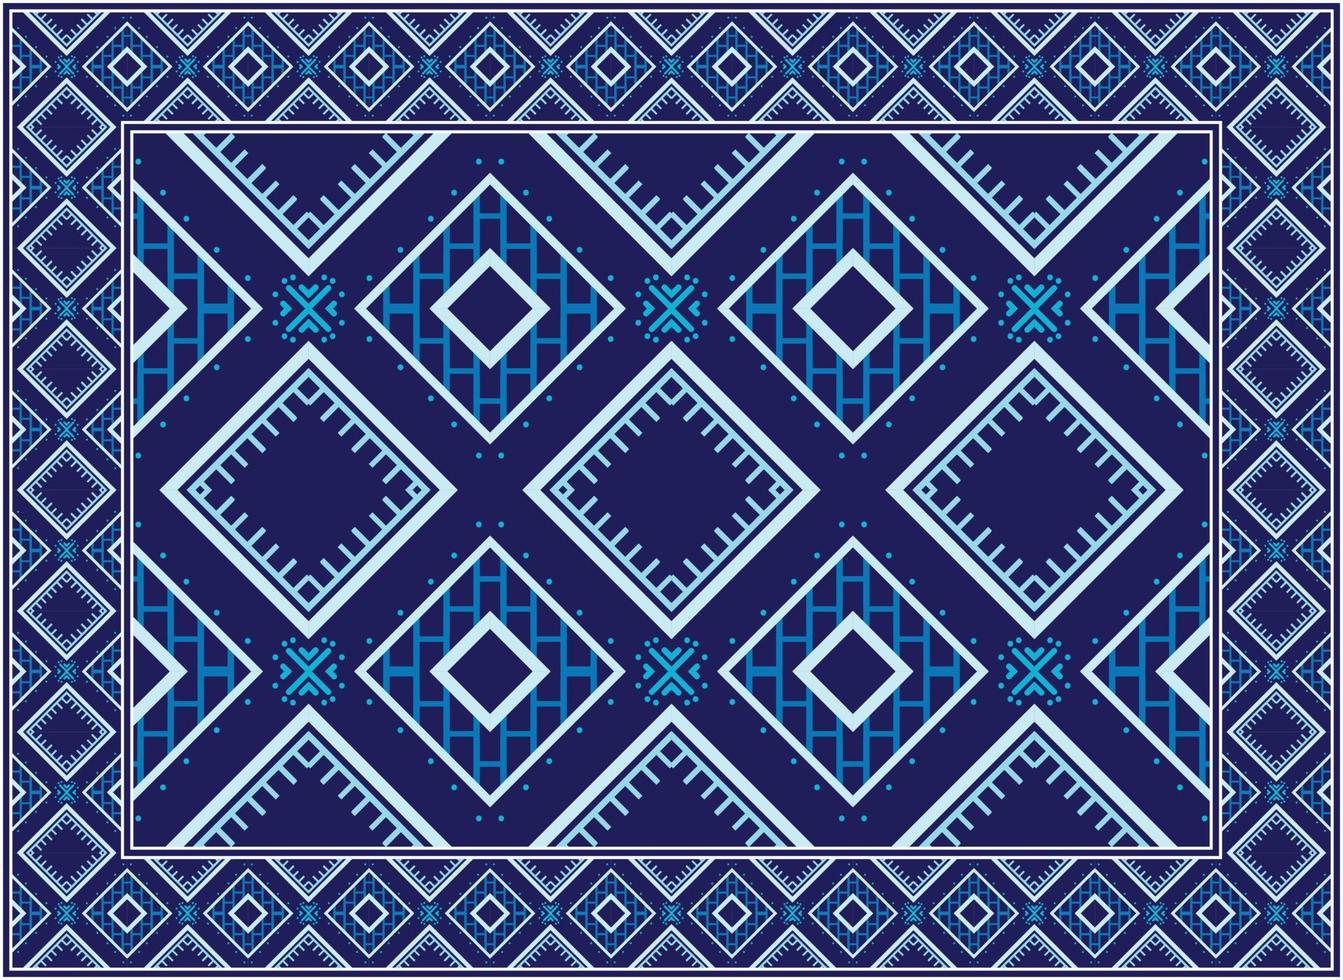 antiek Perzisch tapijt, motief etnisch naadloos patroon boho Perzisch tapijt leven kamer Afrikaanse etnisch aztec stijl ontwerp voor afdrukken kleding stof tapijten, handdoeken, zakdoeken, sjaals tapijt, vector